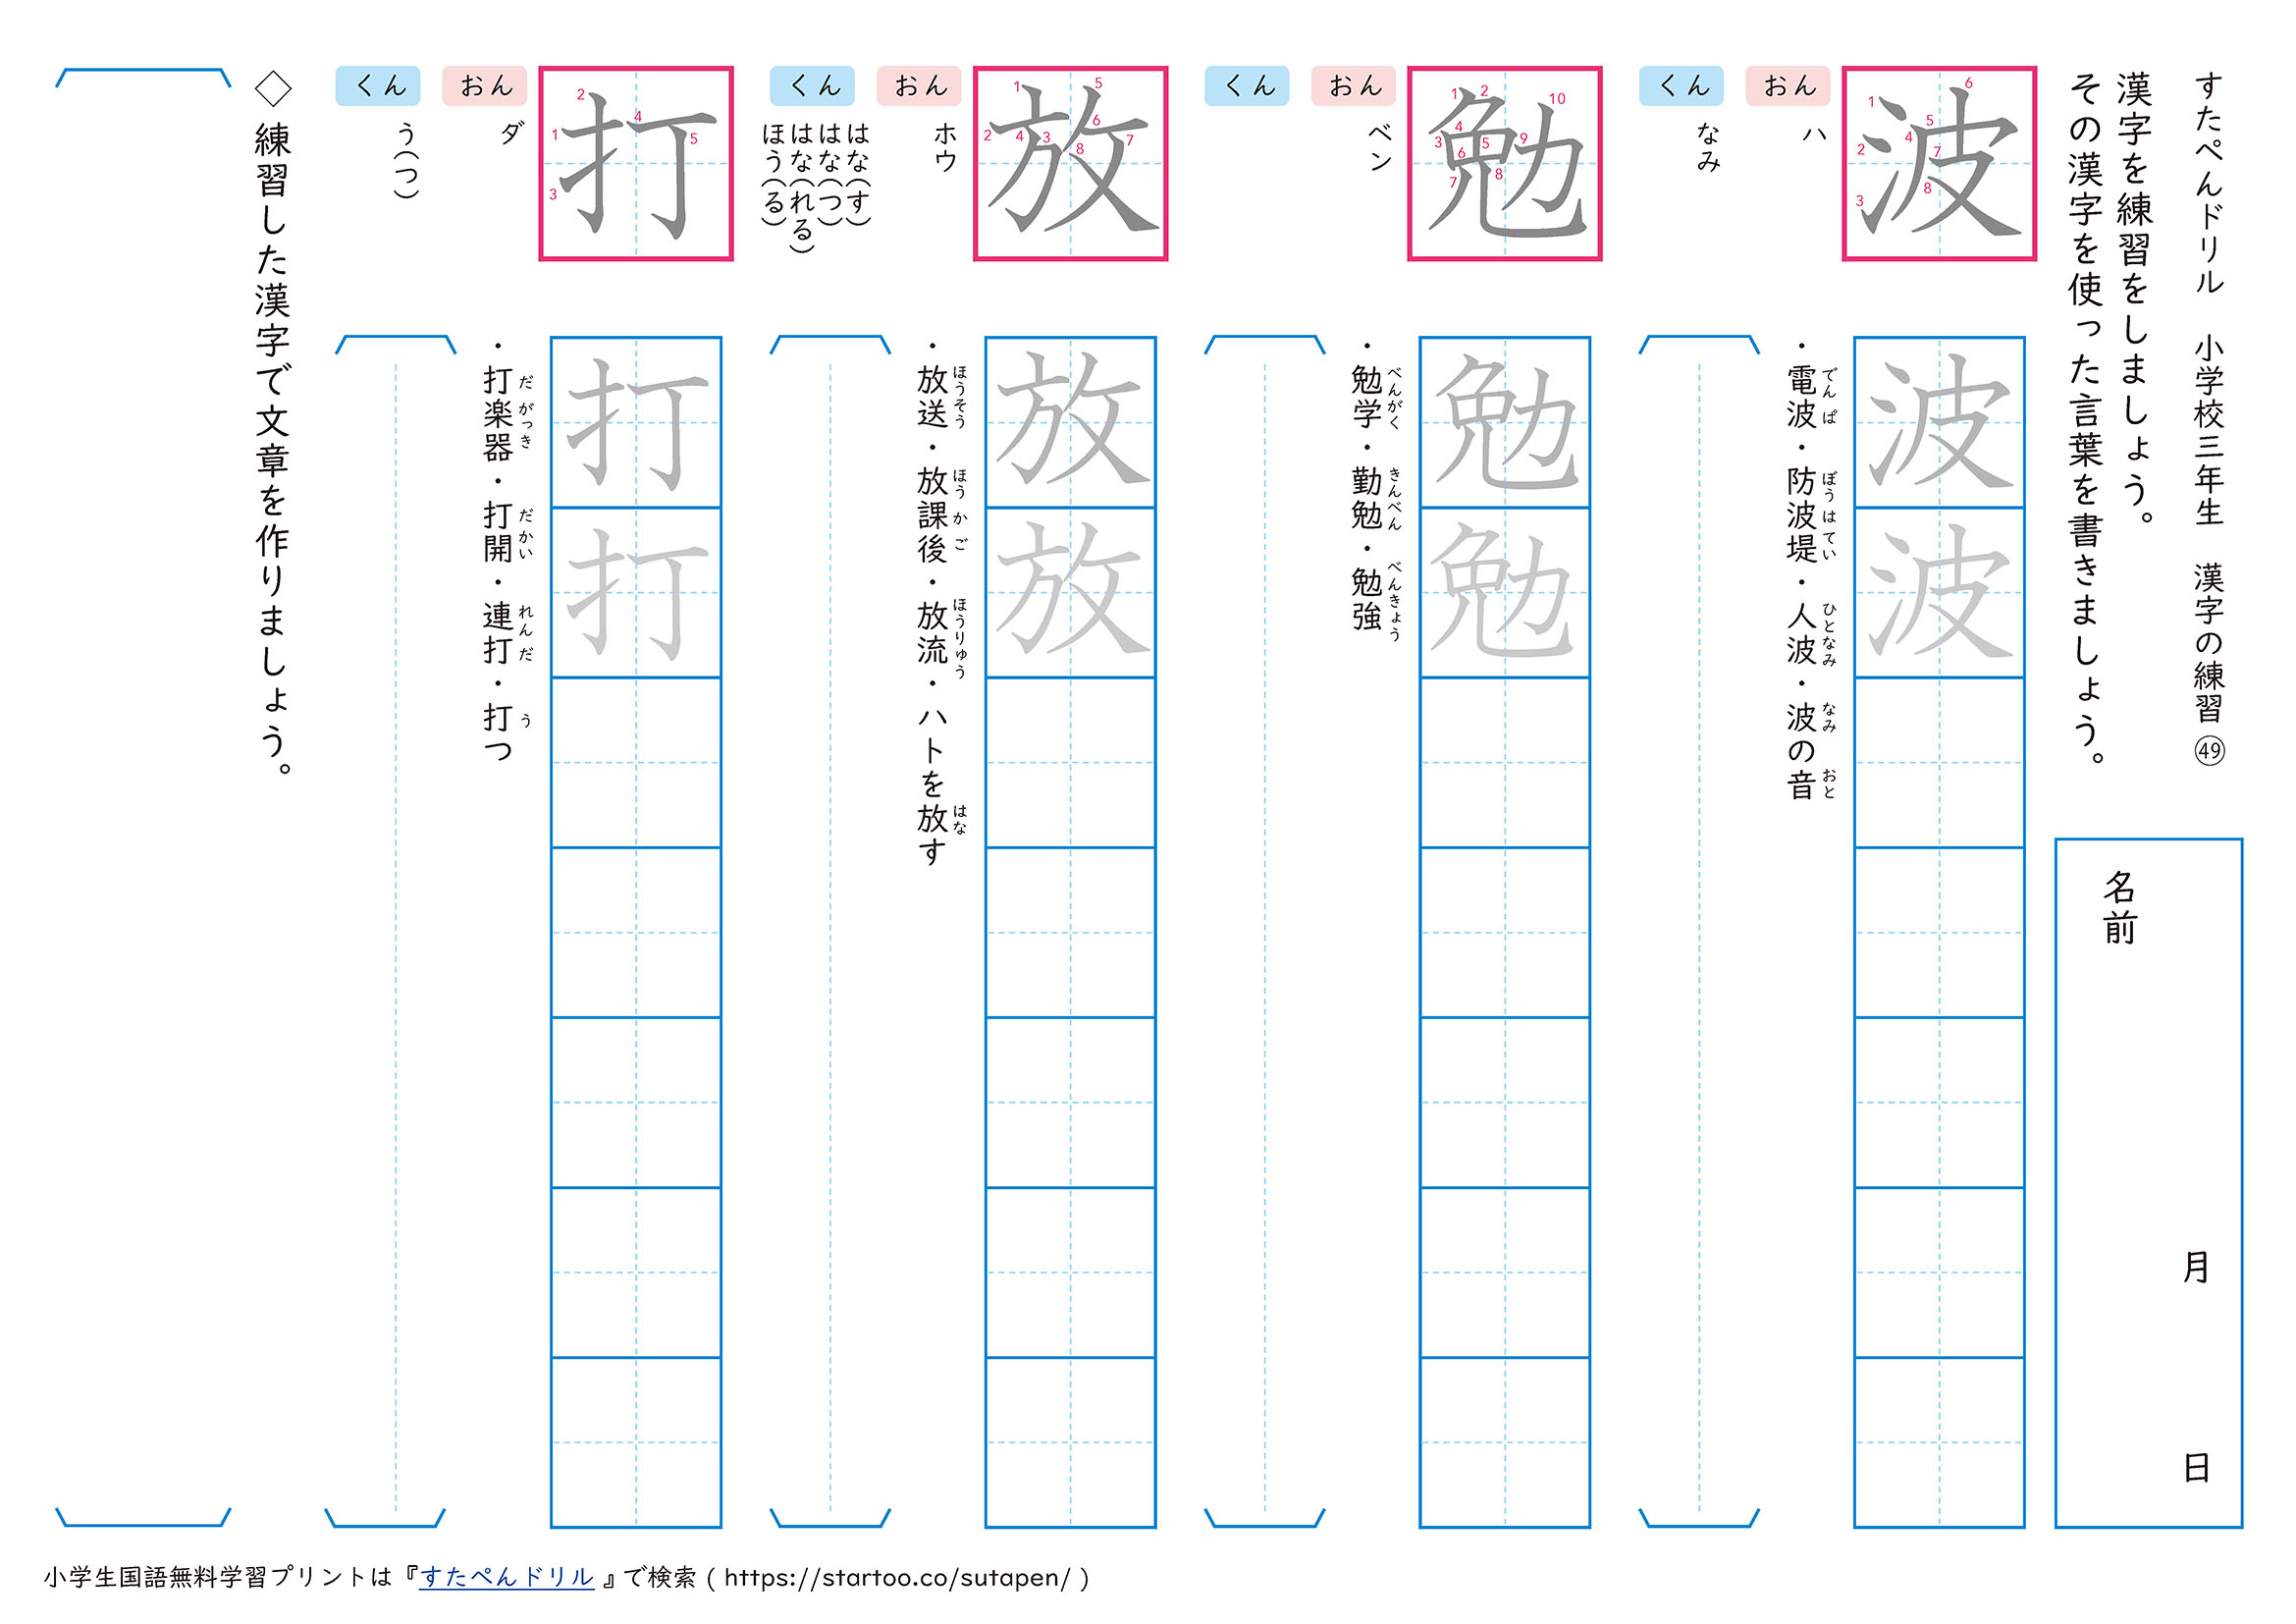 漢字練習プリント「波」「勉」「放」「打」